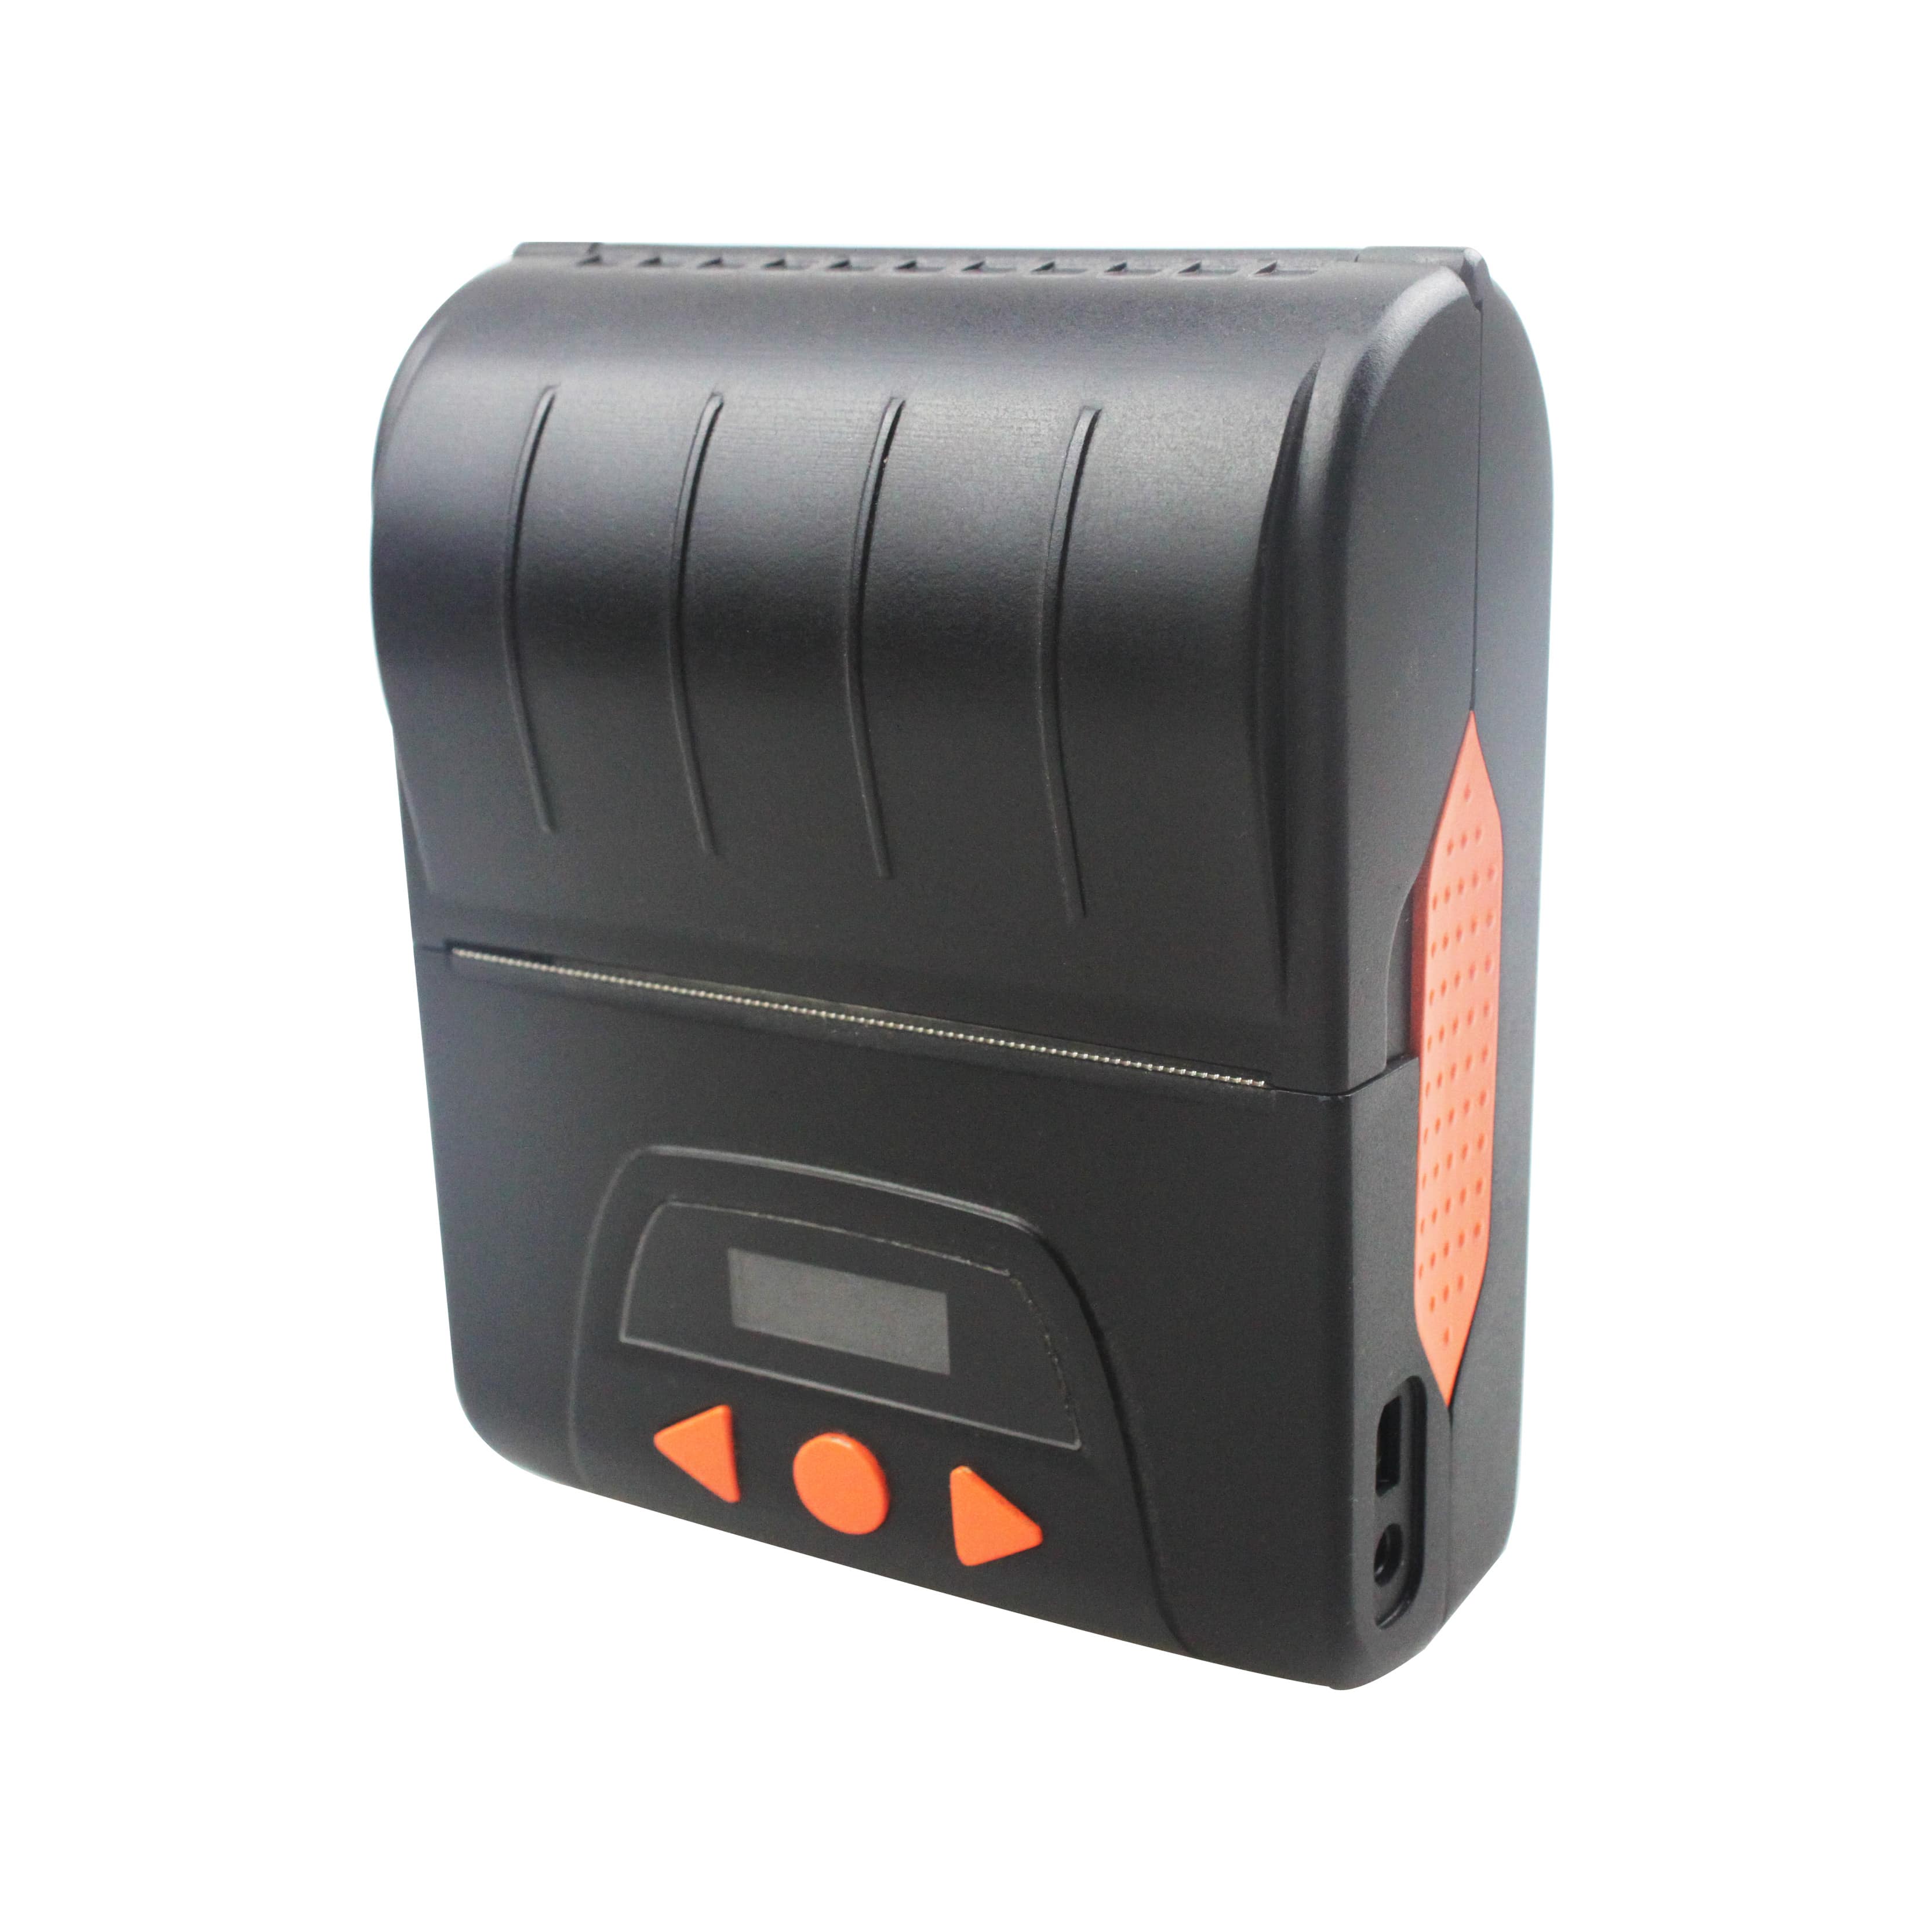 Cashino KMP-III 80mm bluetooth livre SDK portátil mini impressora de recibos portátil
